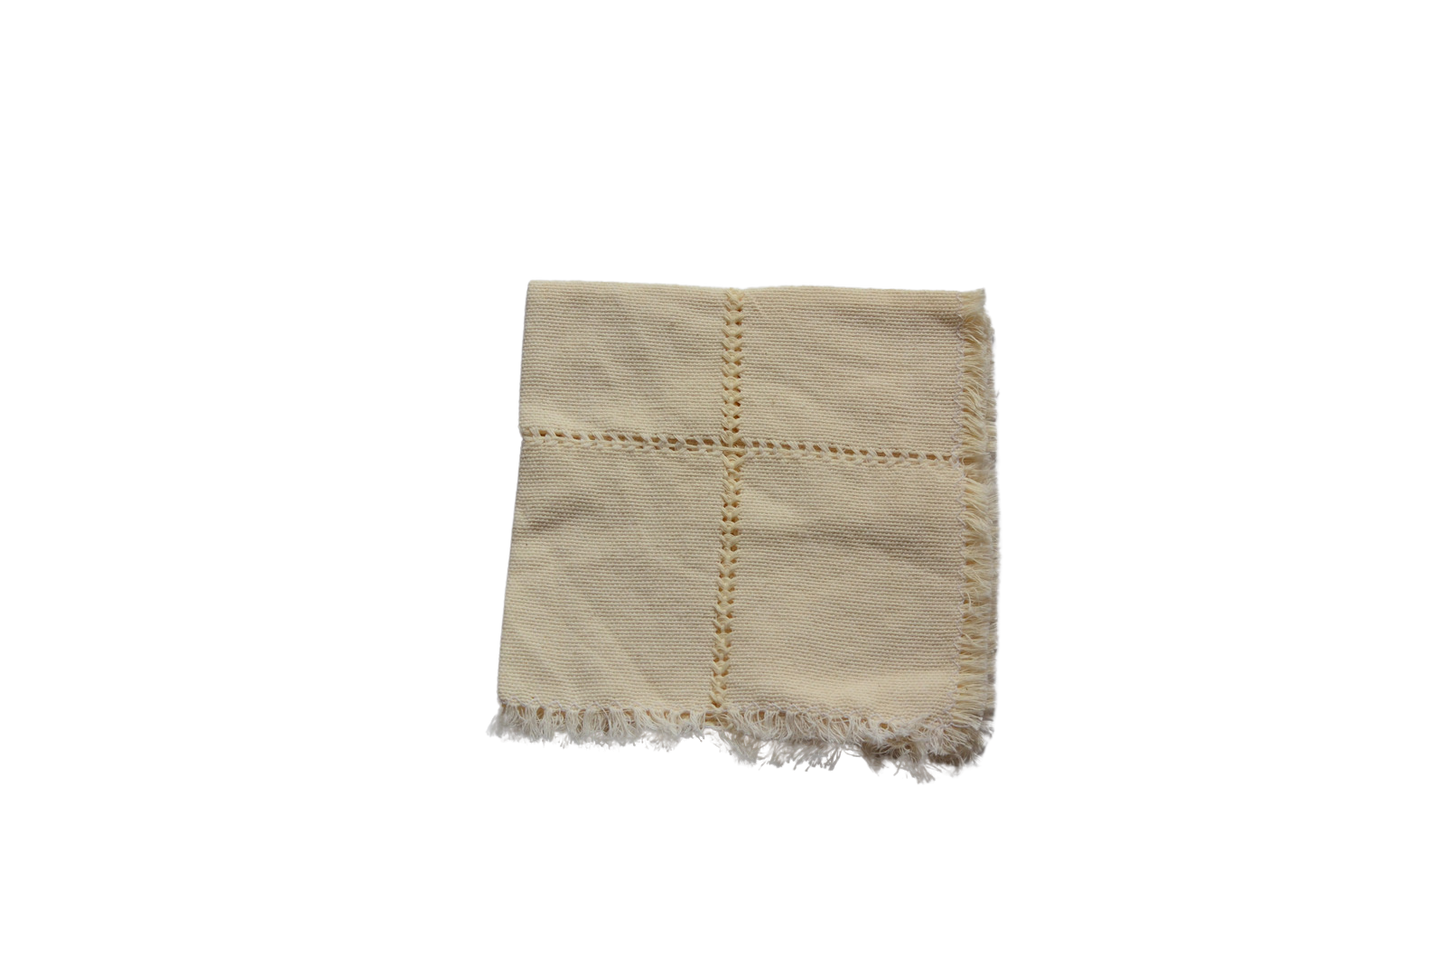 Folded cream hemstitched napkin